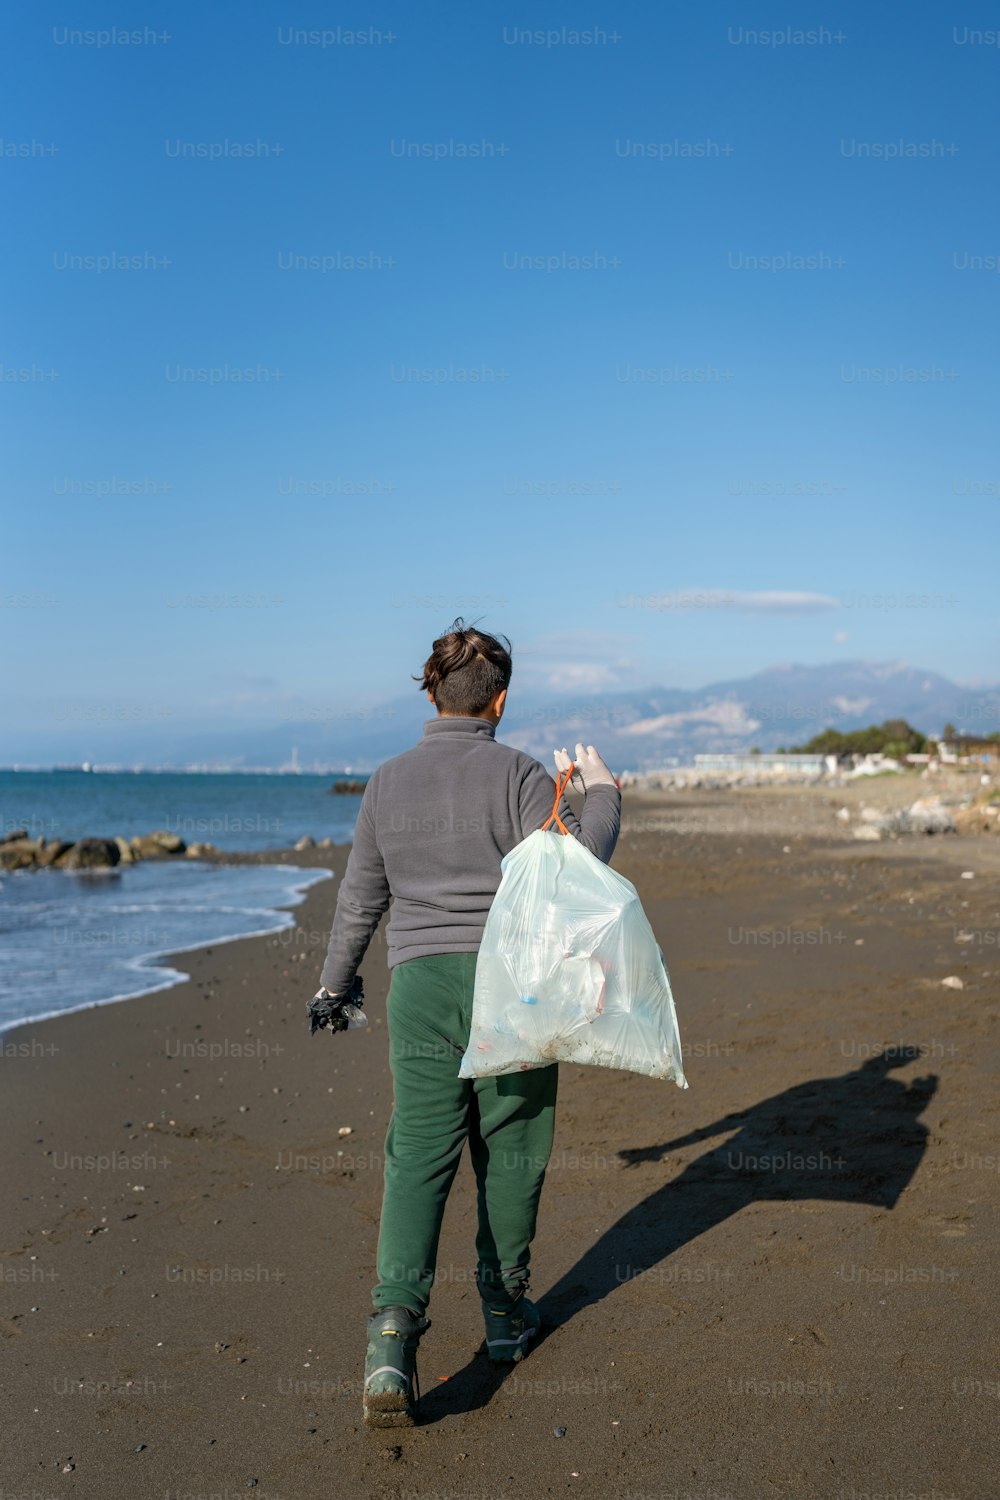 Una persona caminando en una playa con una bolsa de plástico